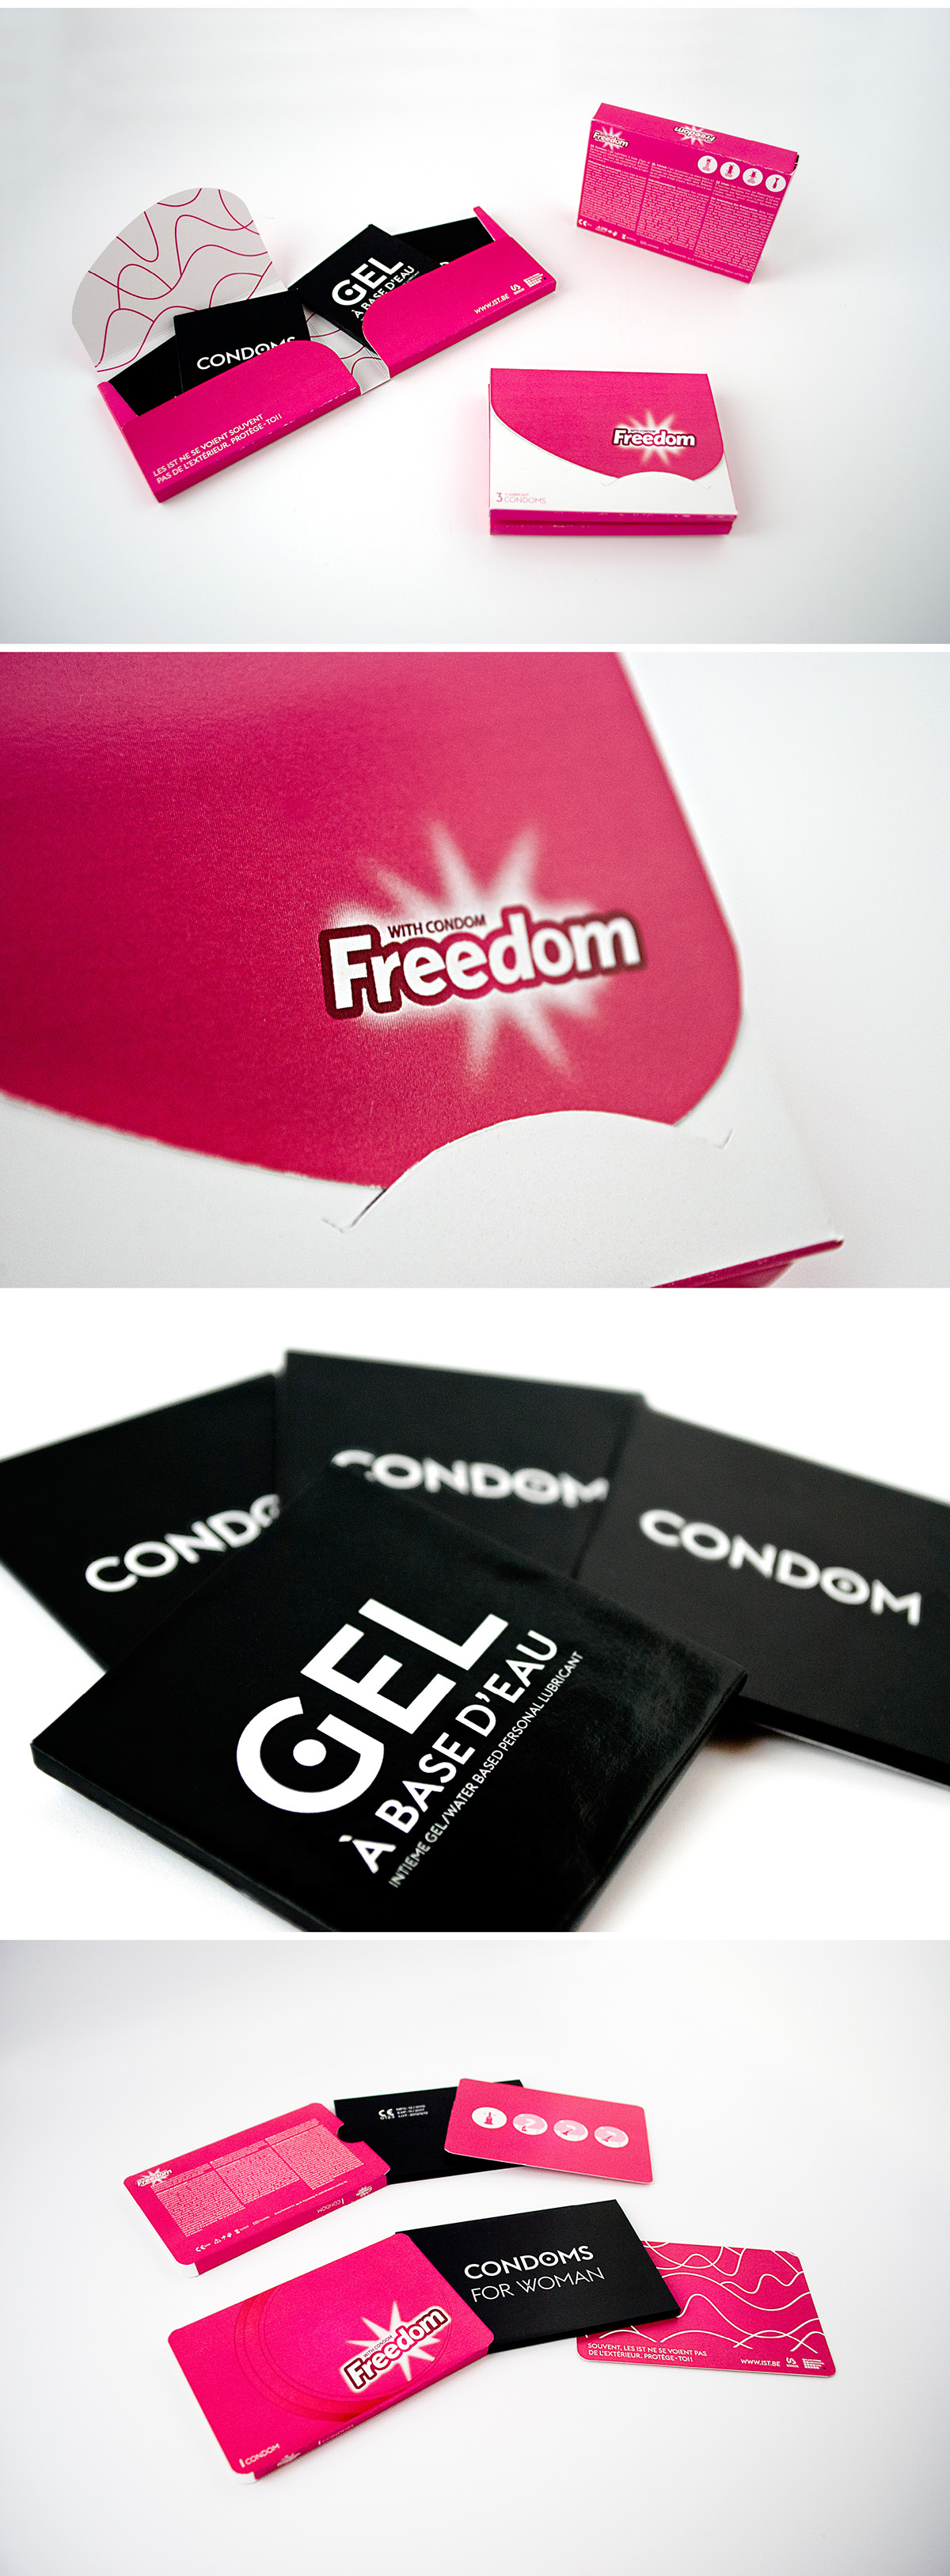 campaign sex campagne mst ist Love sensibilisation design TFE pink sida VIH AIDS